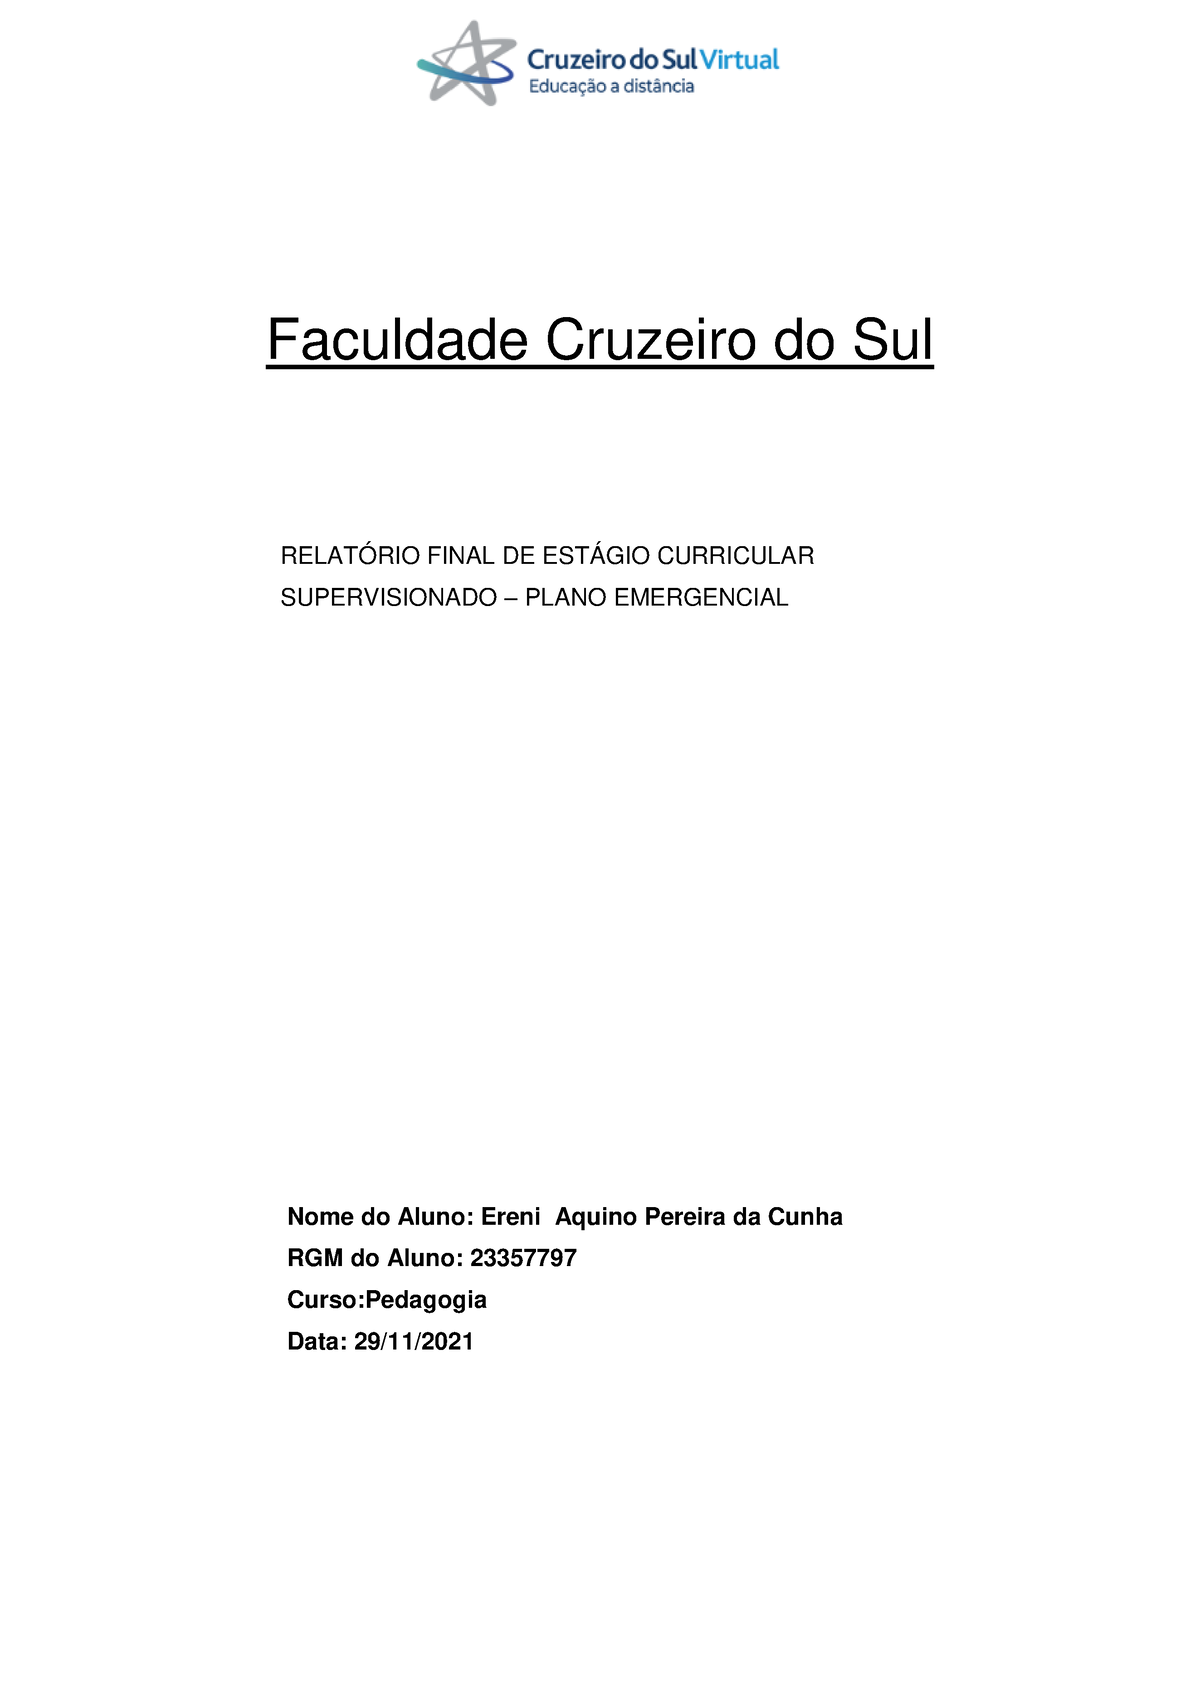 Relatorio DE Gestão Cruzeiro DO SUL (01) - UNIVERSIDADE CRUZEIRO DO SUL  Estágio Supervisionado em - Studocu